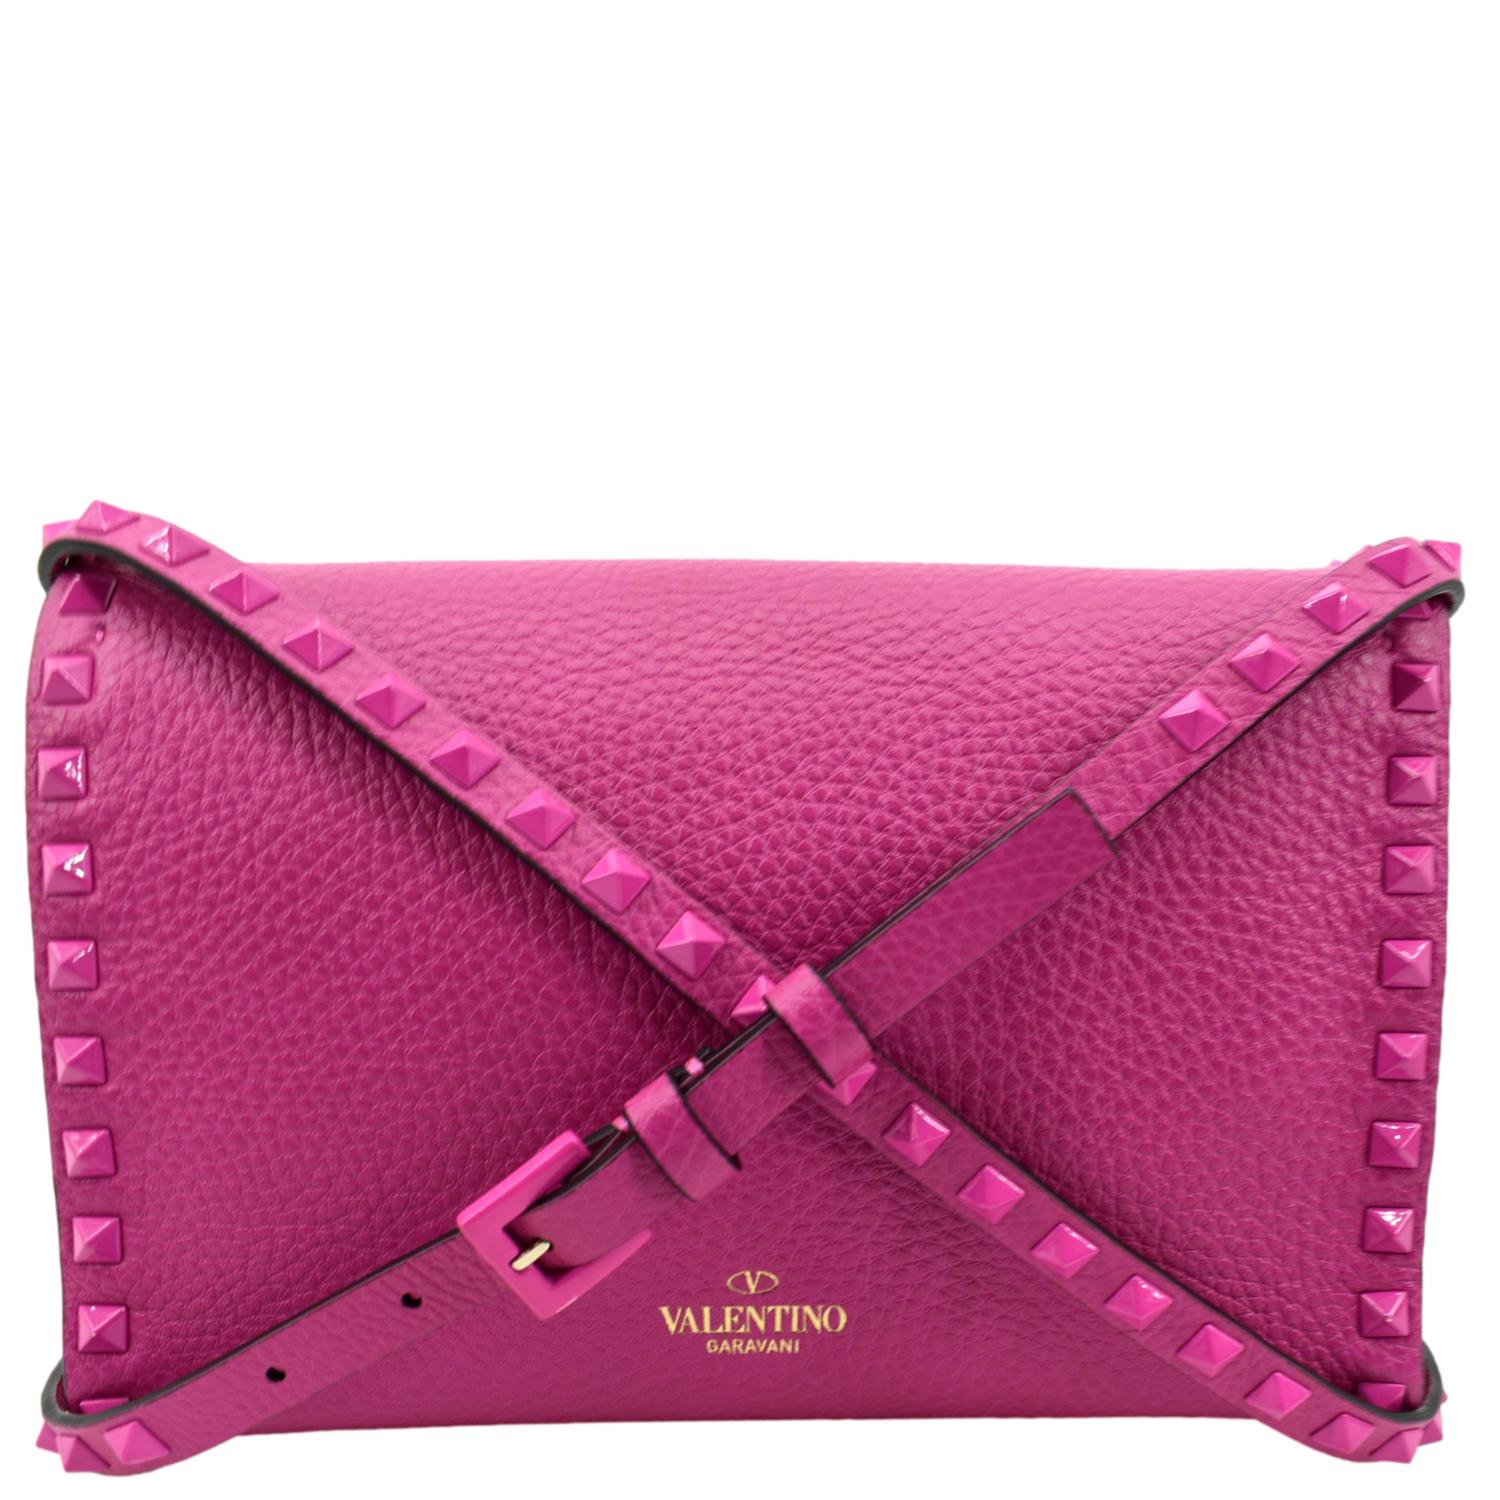 VALENTINO Mini Rockstud Leather Bag